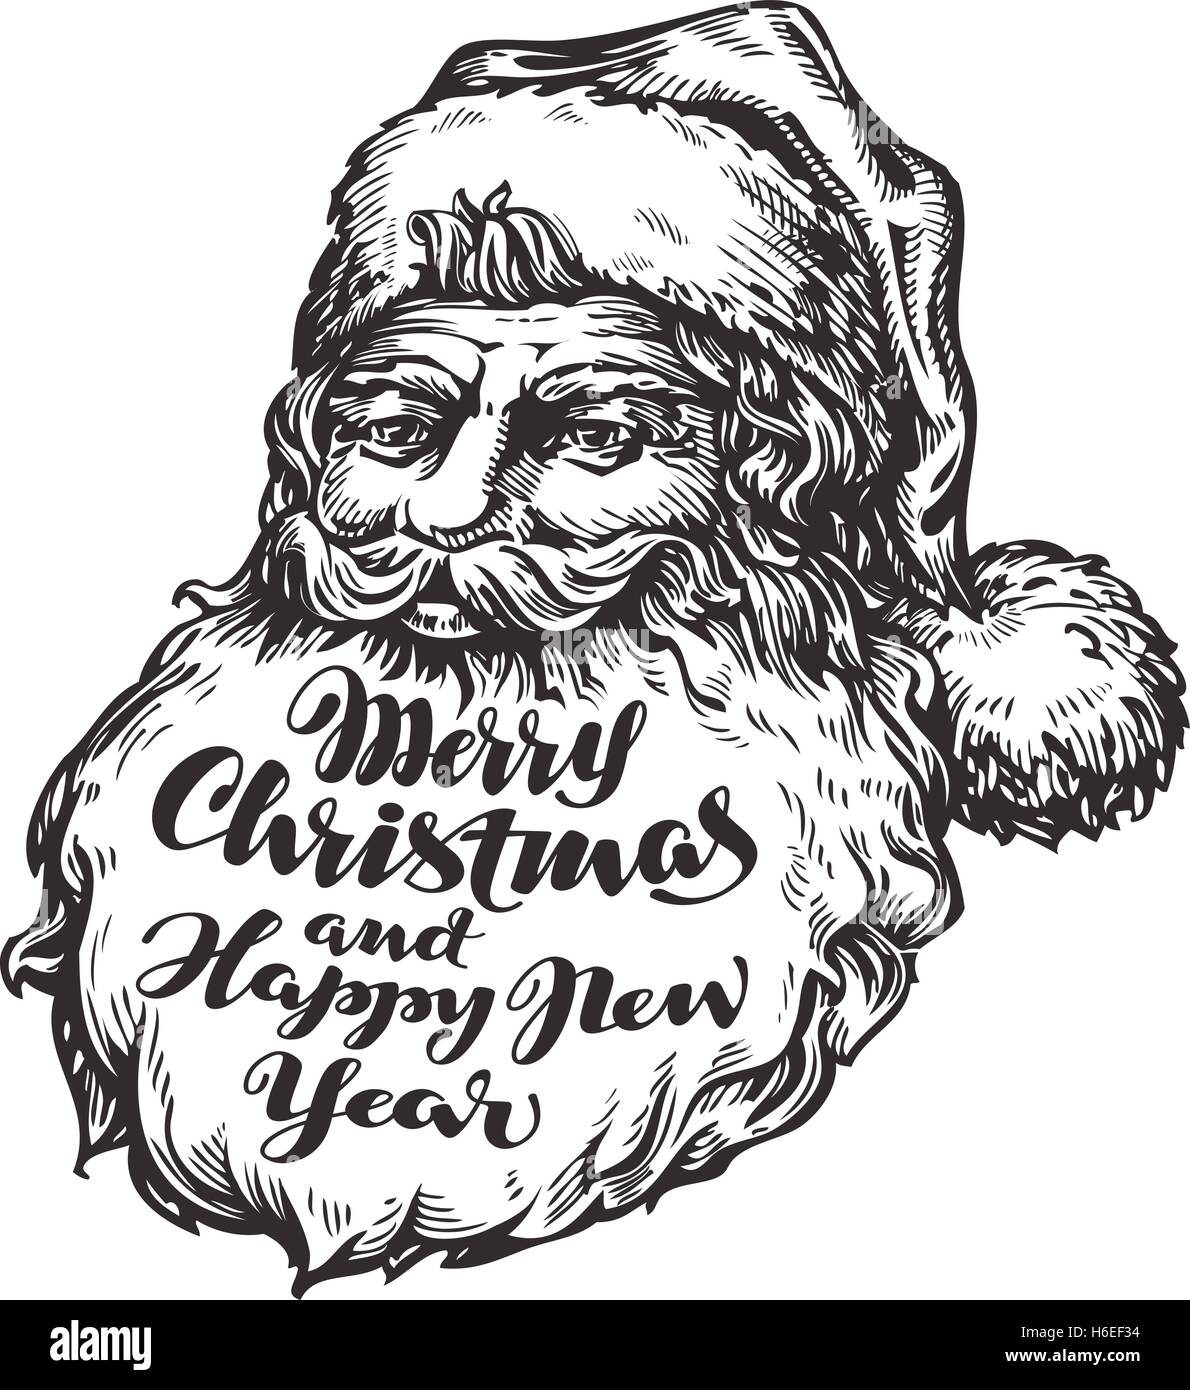 Santa Claus Vektor. Frohe Weihnachten und glückliches neues Jahr Stock Vektor